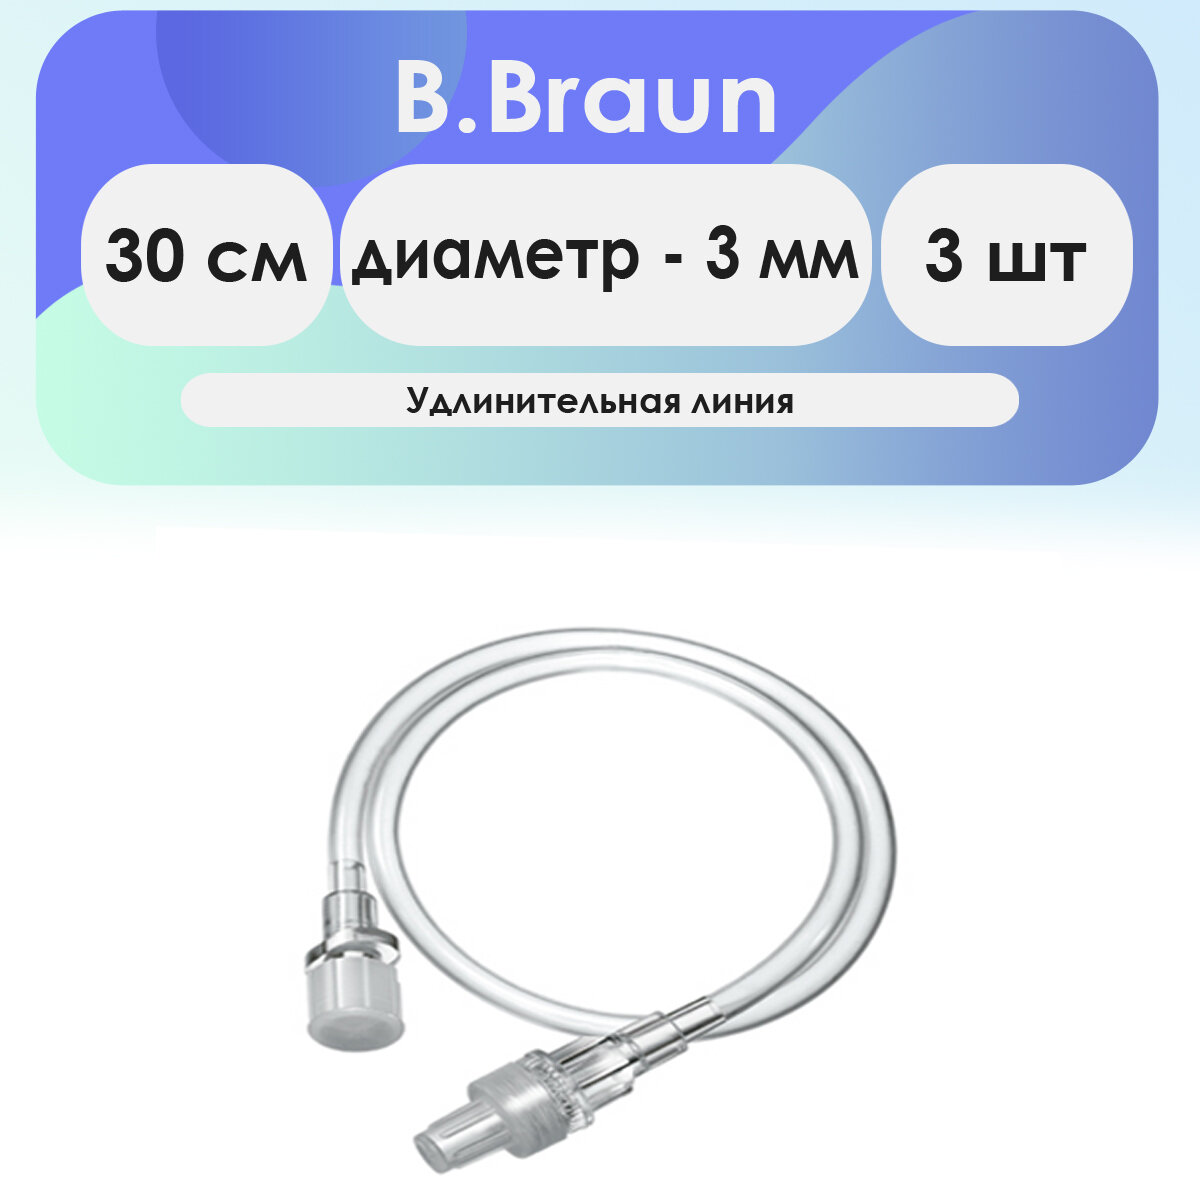 Удлинительная линия B. Braun длина 30 см, диаметр 3.0 мм - 3 шт комплект